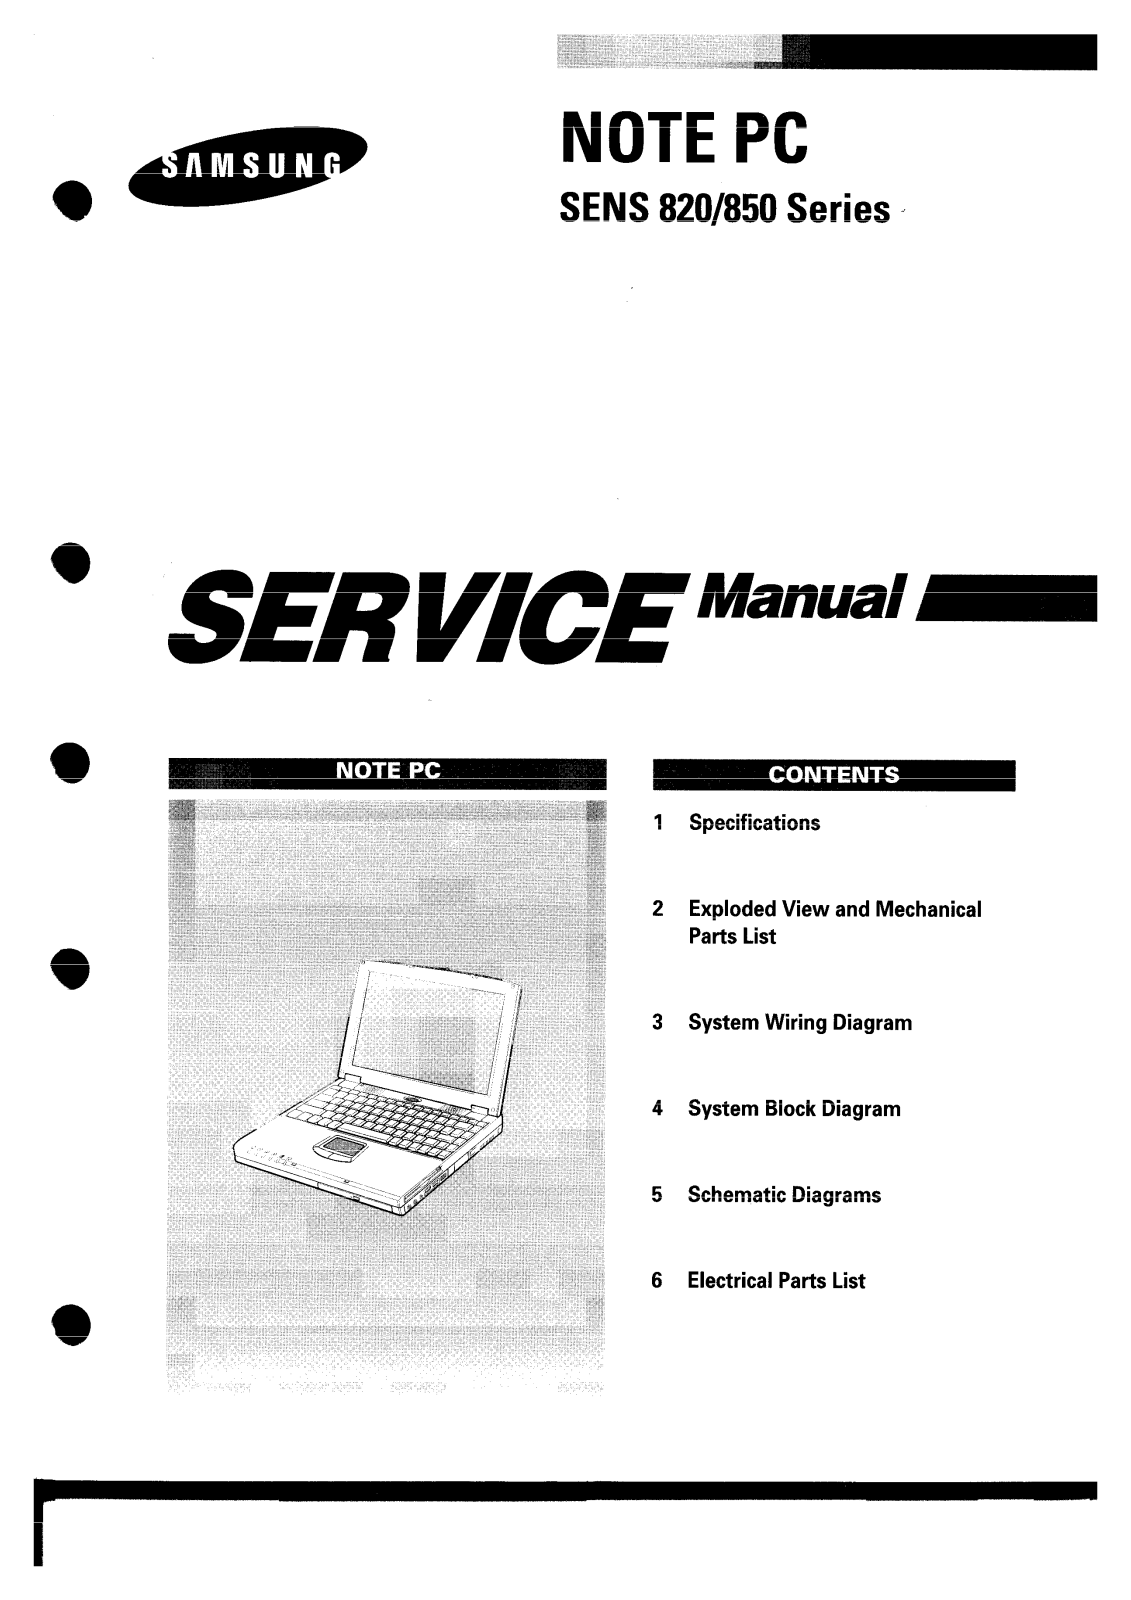 Samsung n820, S820, n850 Service Manual